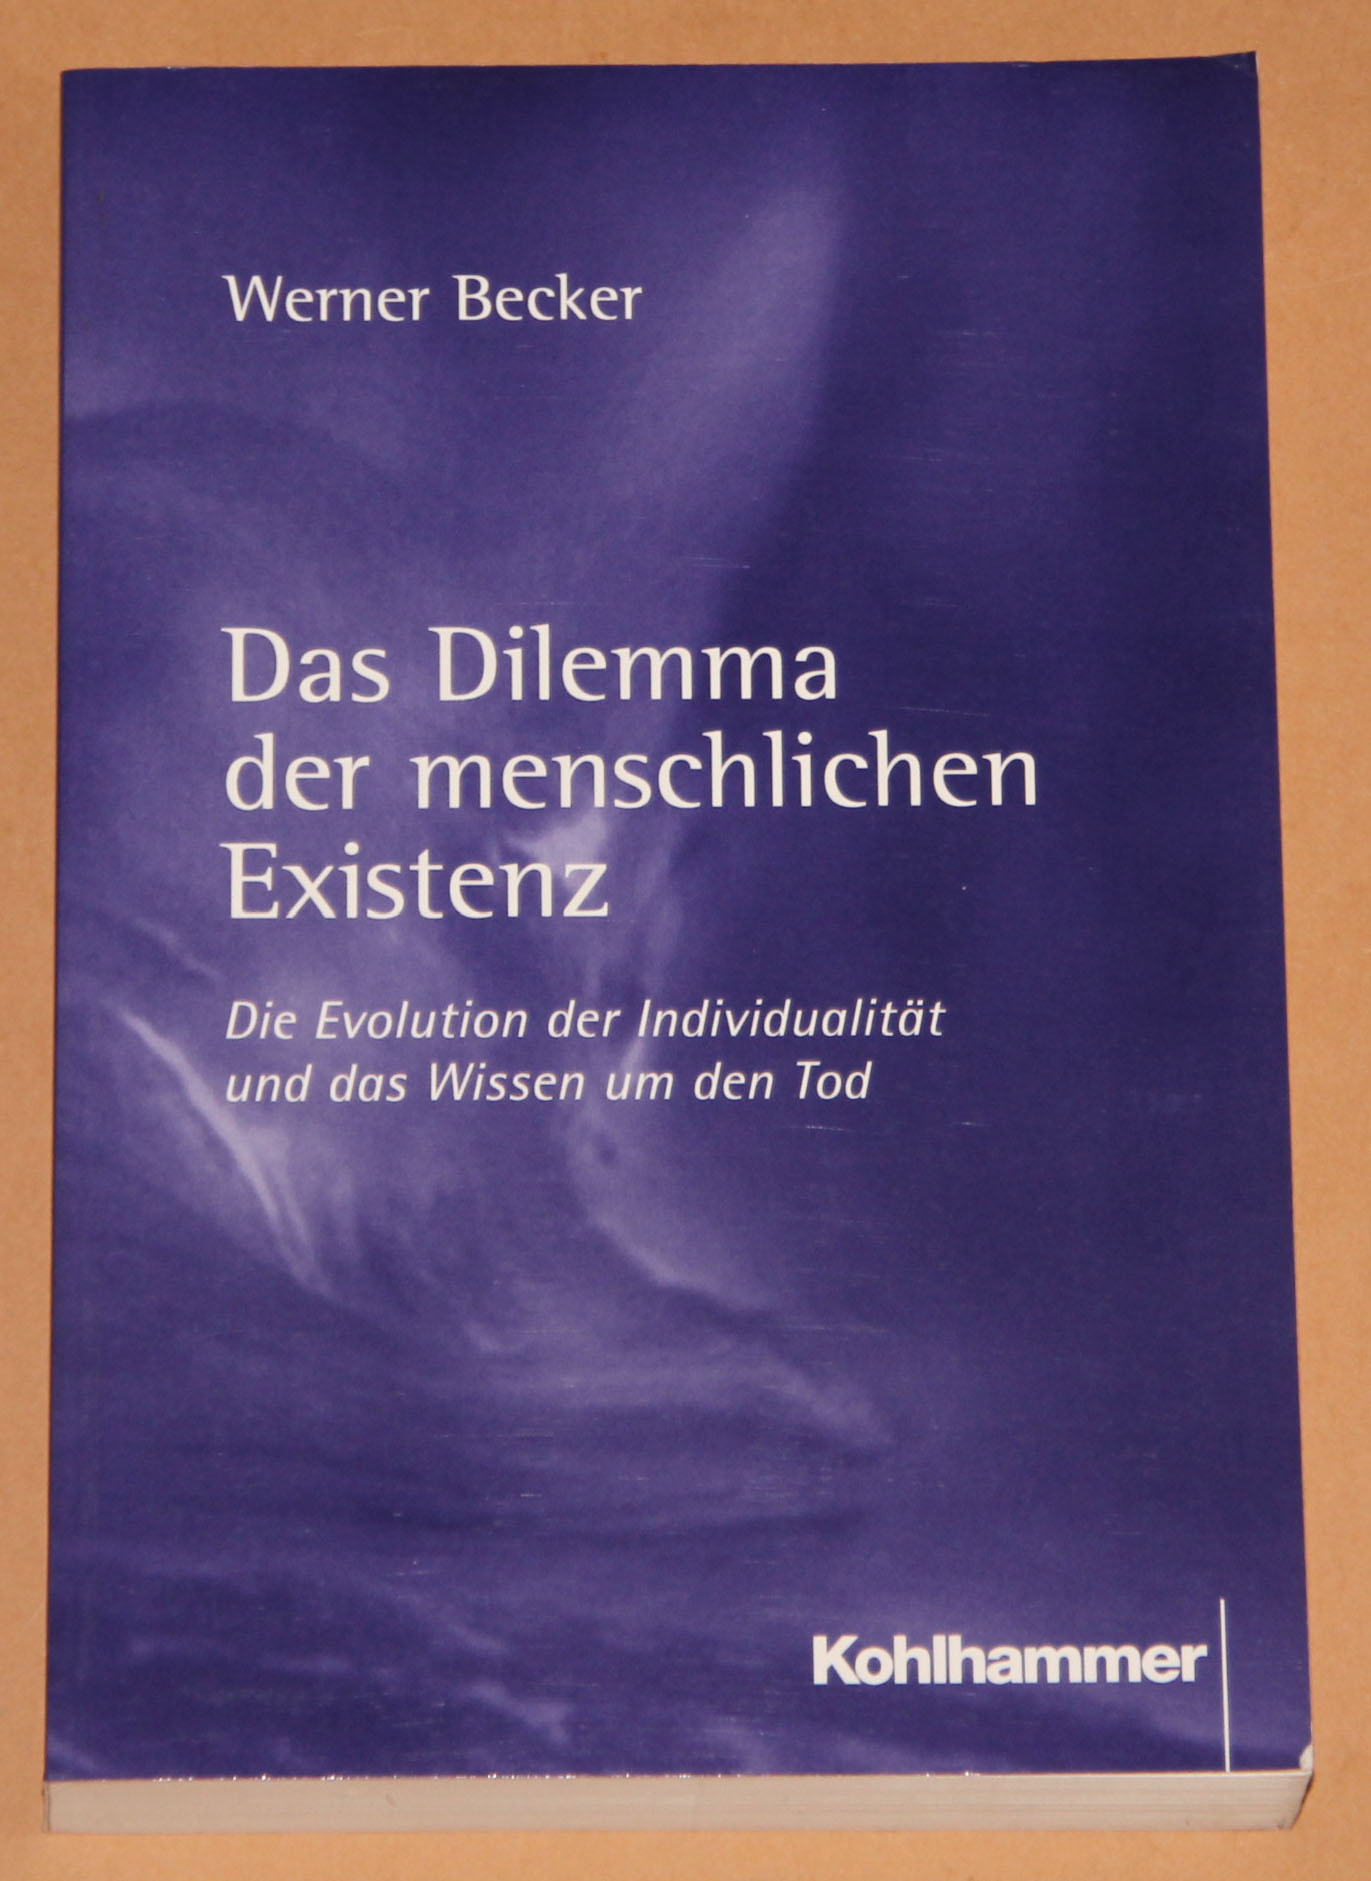 Das Dilemma der menschlichen Existenz - Die Evolution der Individualität und das Wissen um den Tod - Becker, Werner